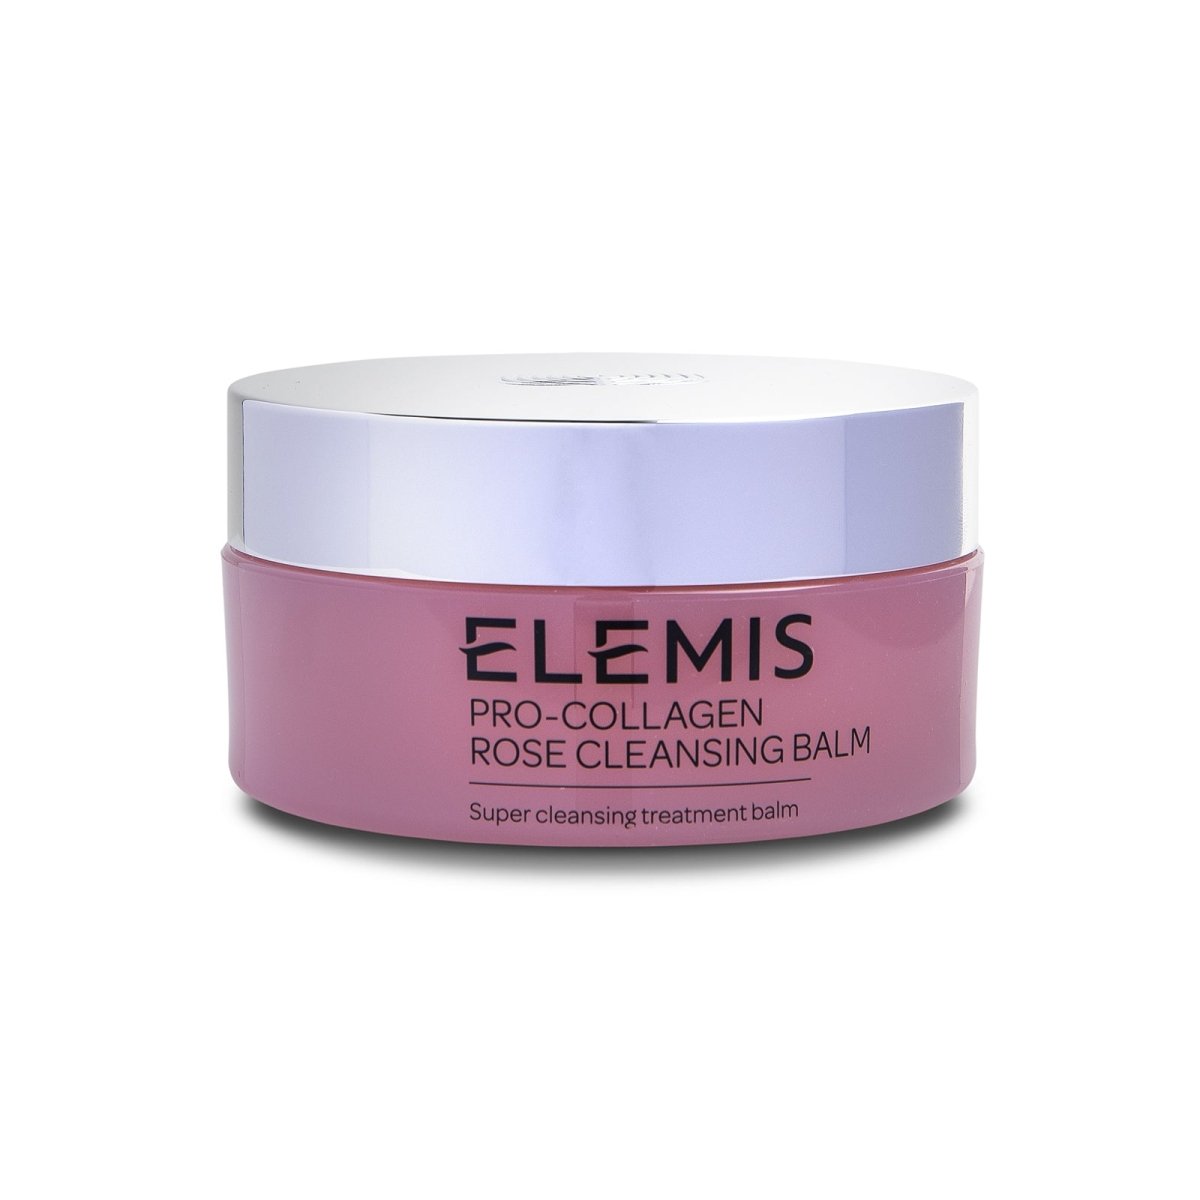 Elemis Pro-Collagen Rose Cleansing Balm - SkincareEssentials